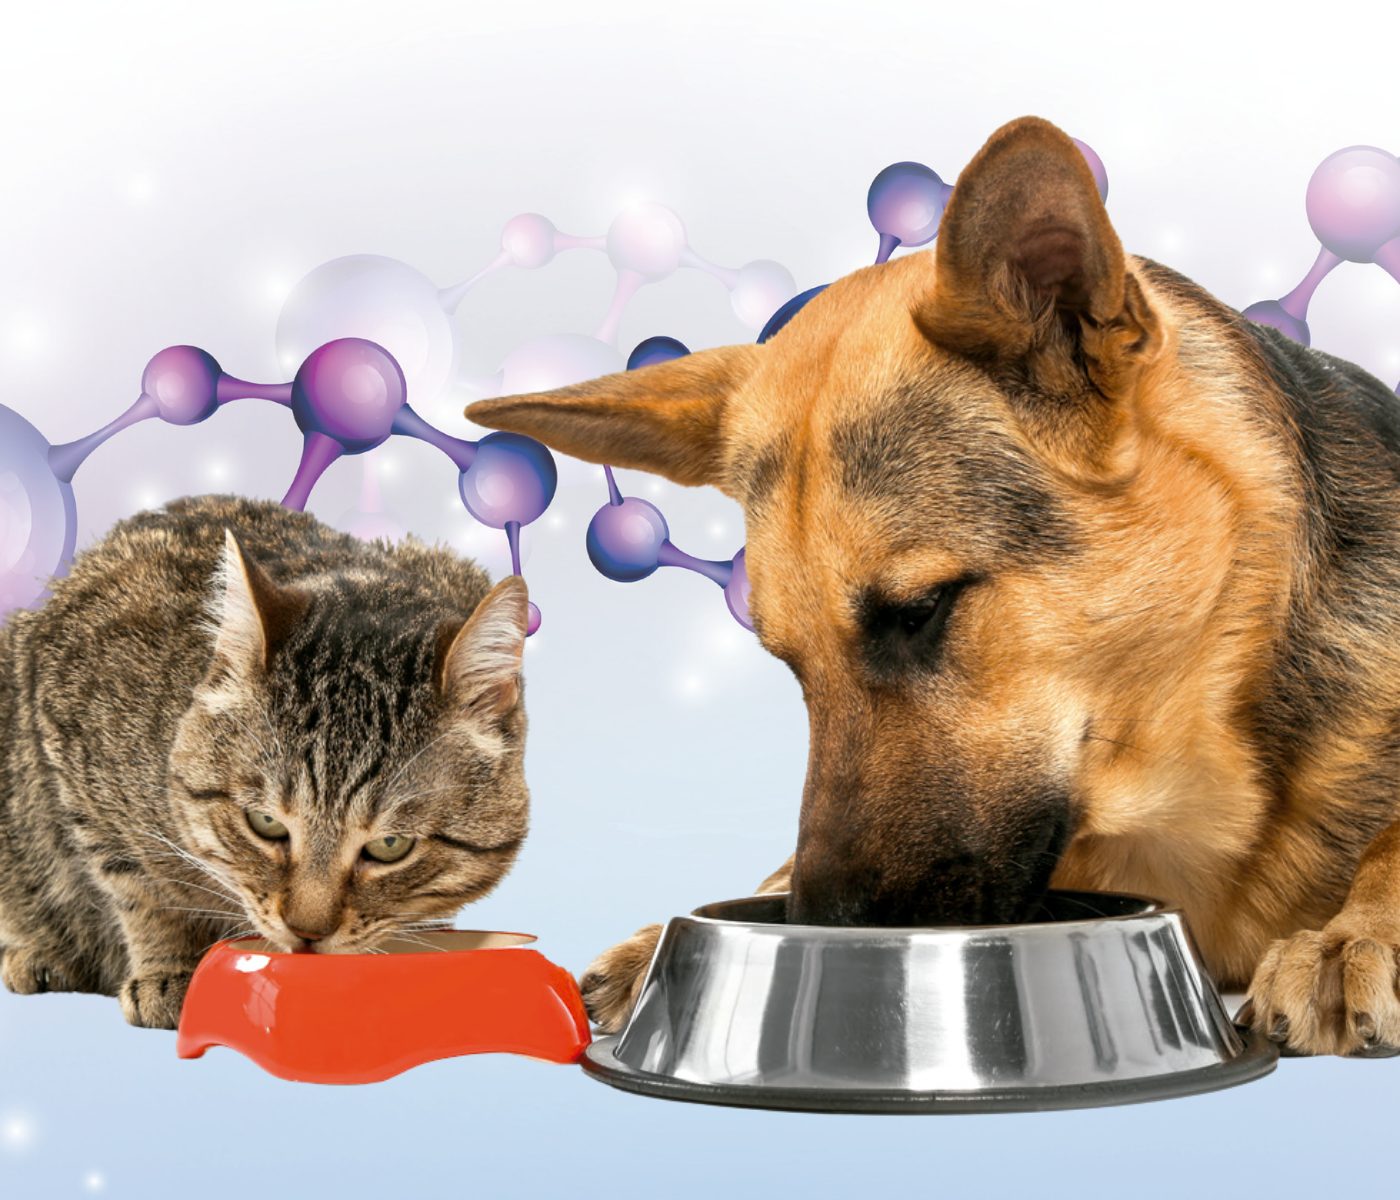 Enzimas exógenas em alimentos para cães e gatos: o que sabemos até agora?